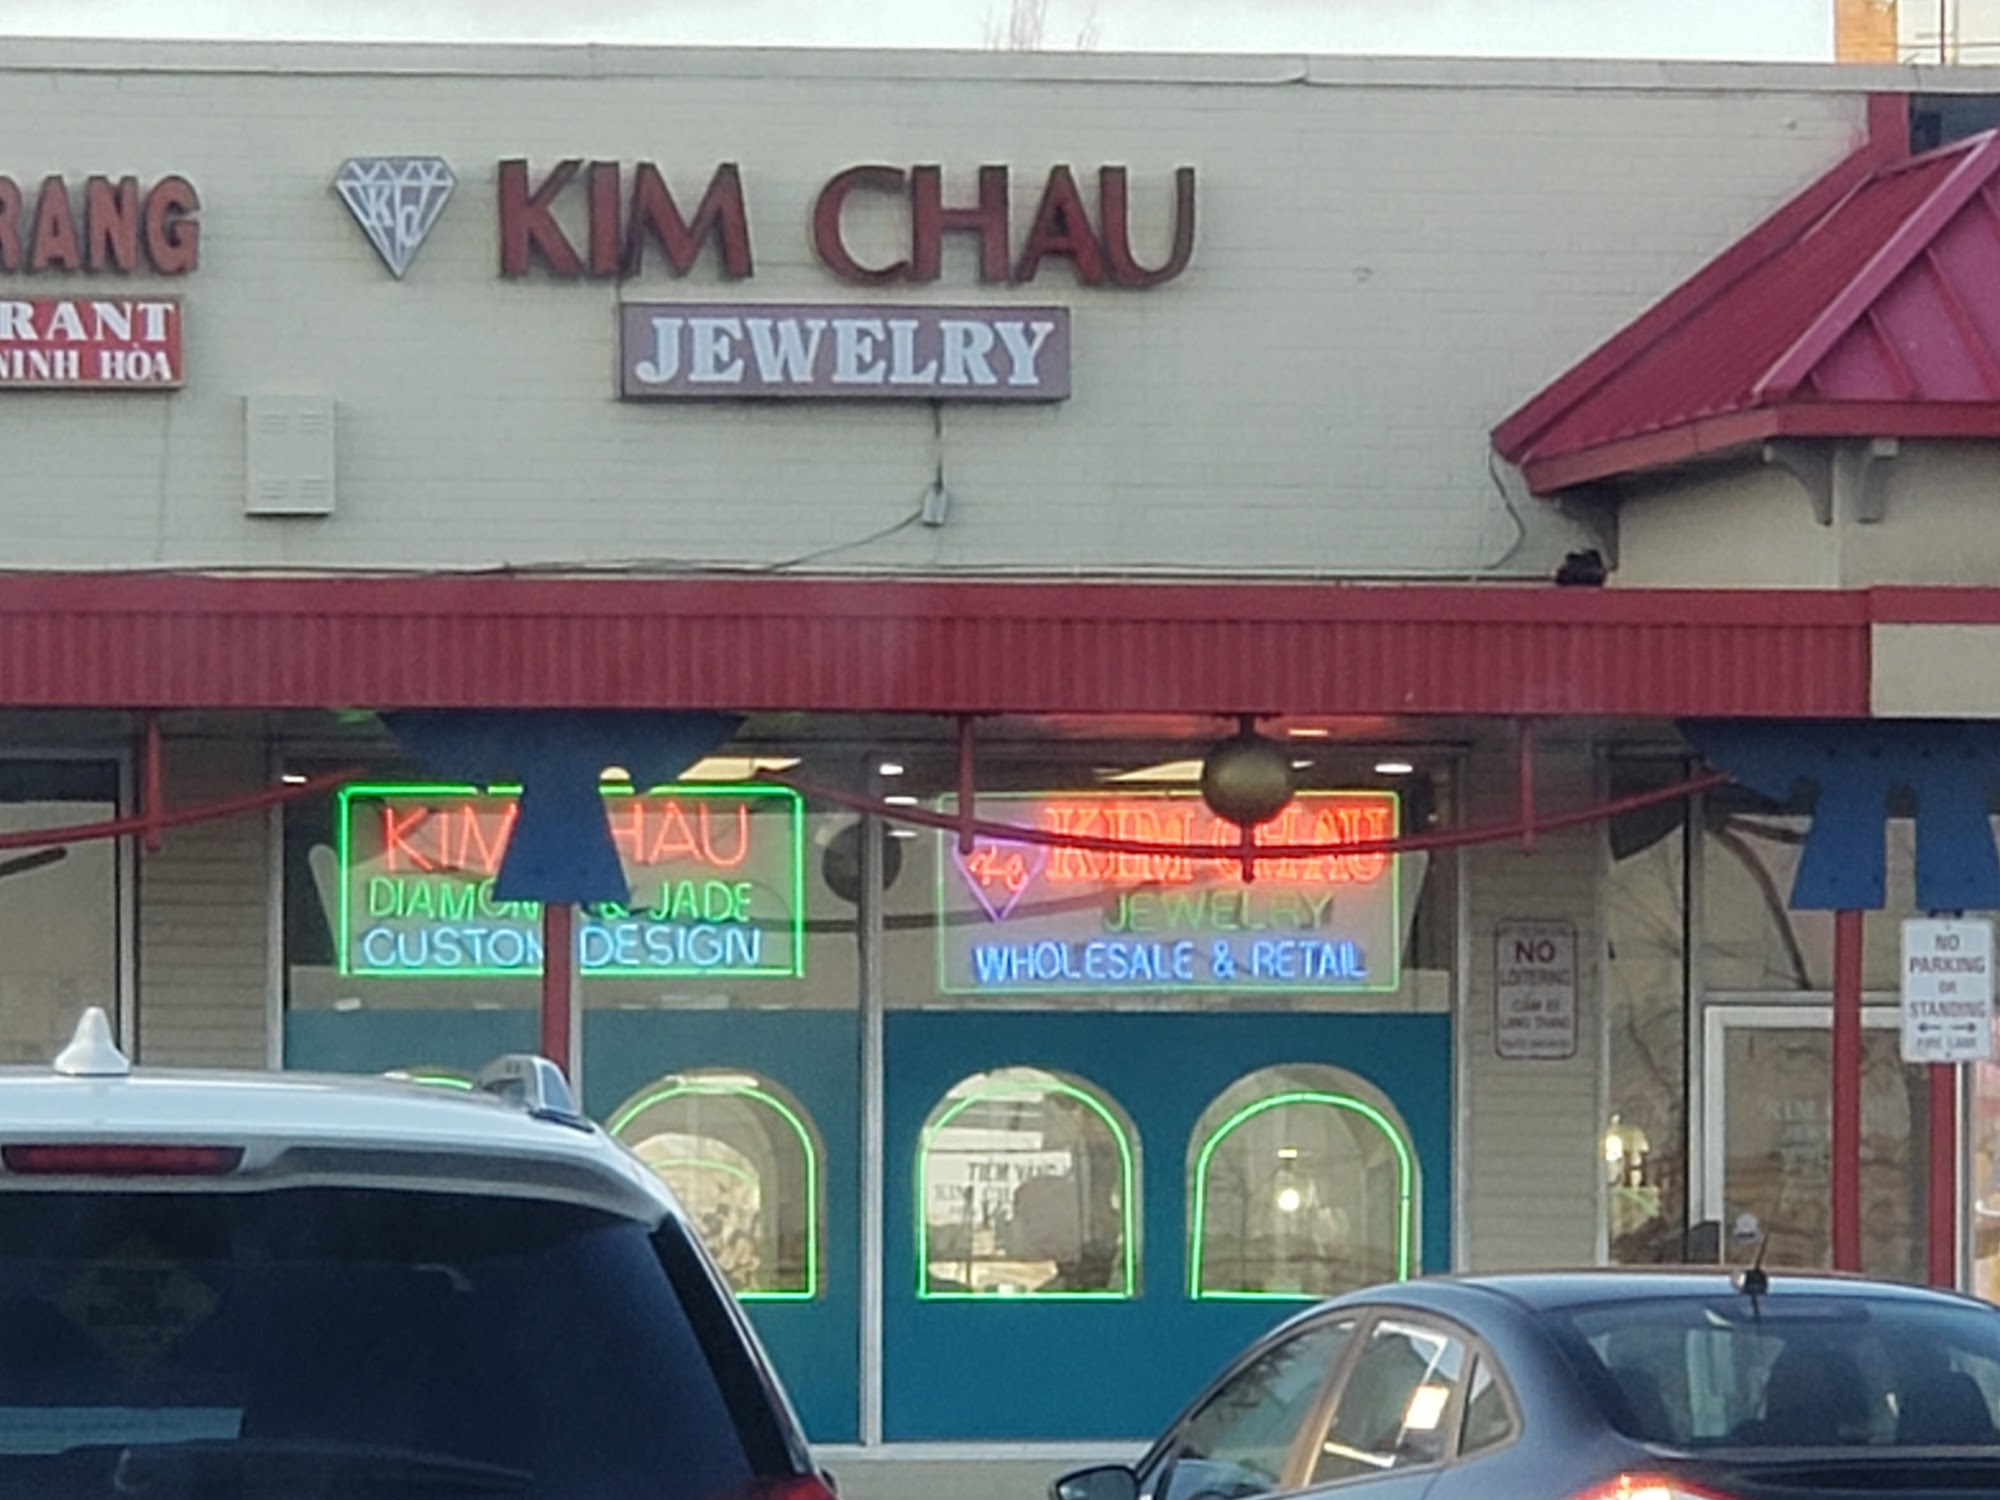 Kim Chau Jewelry